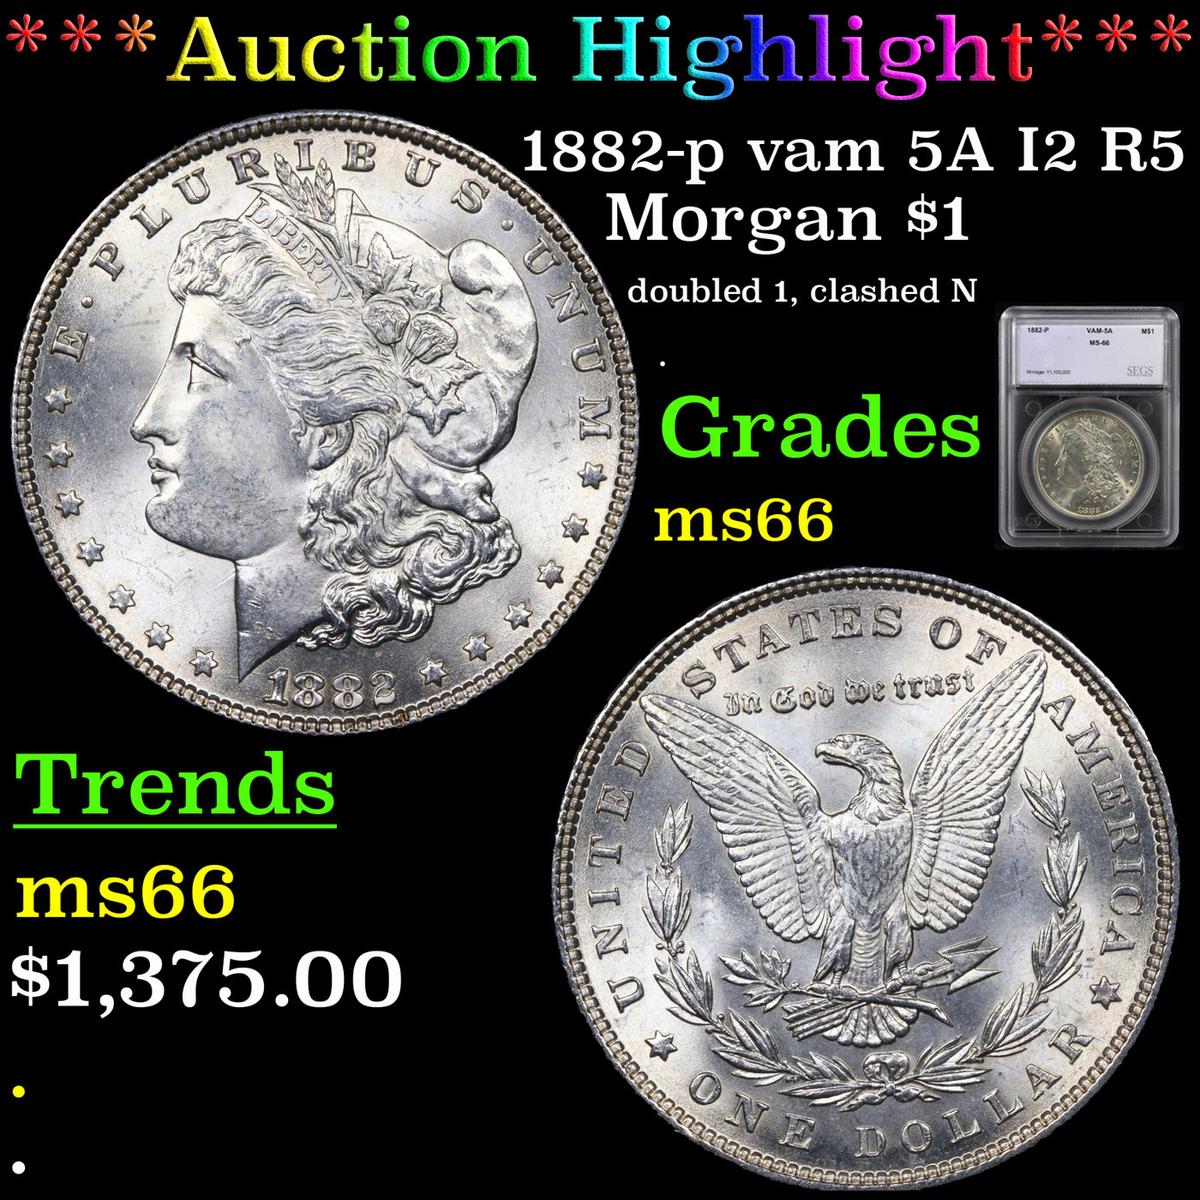 ***Auction Highlight*** 1882-p vam 5A I2 R5 Morgan Dollar $1 Graded ms66 By SEGS (fc)